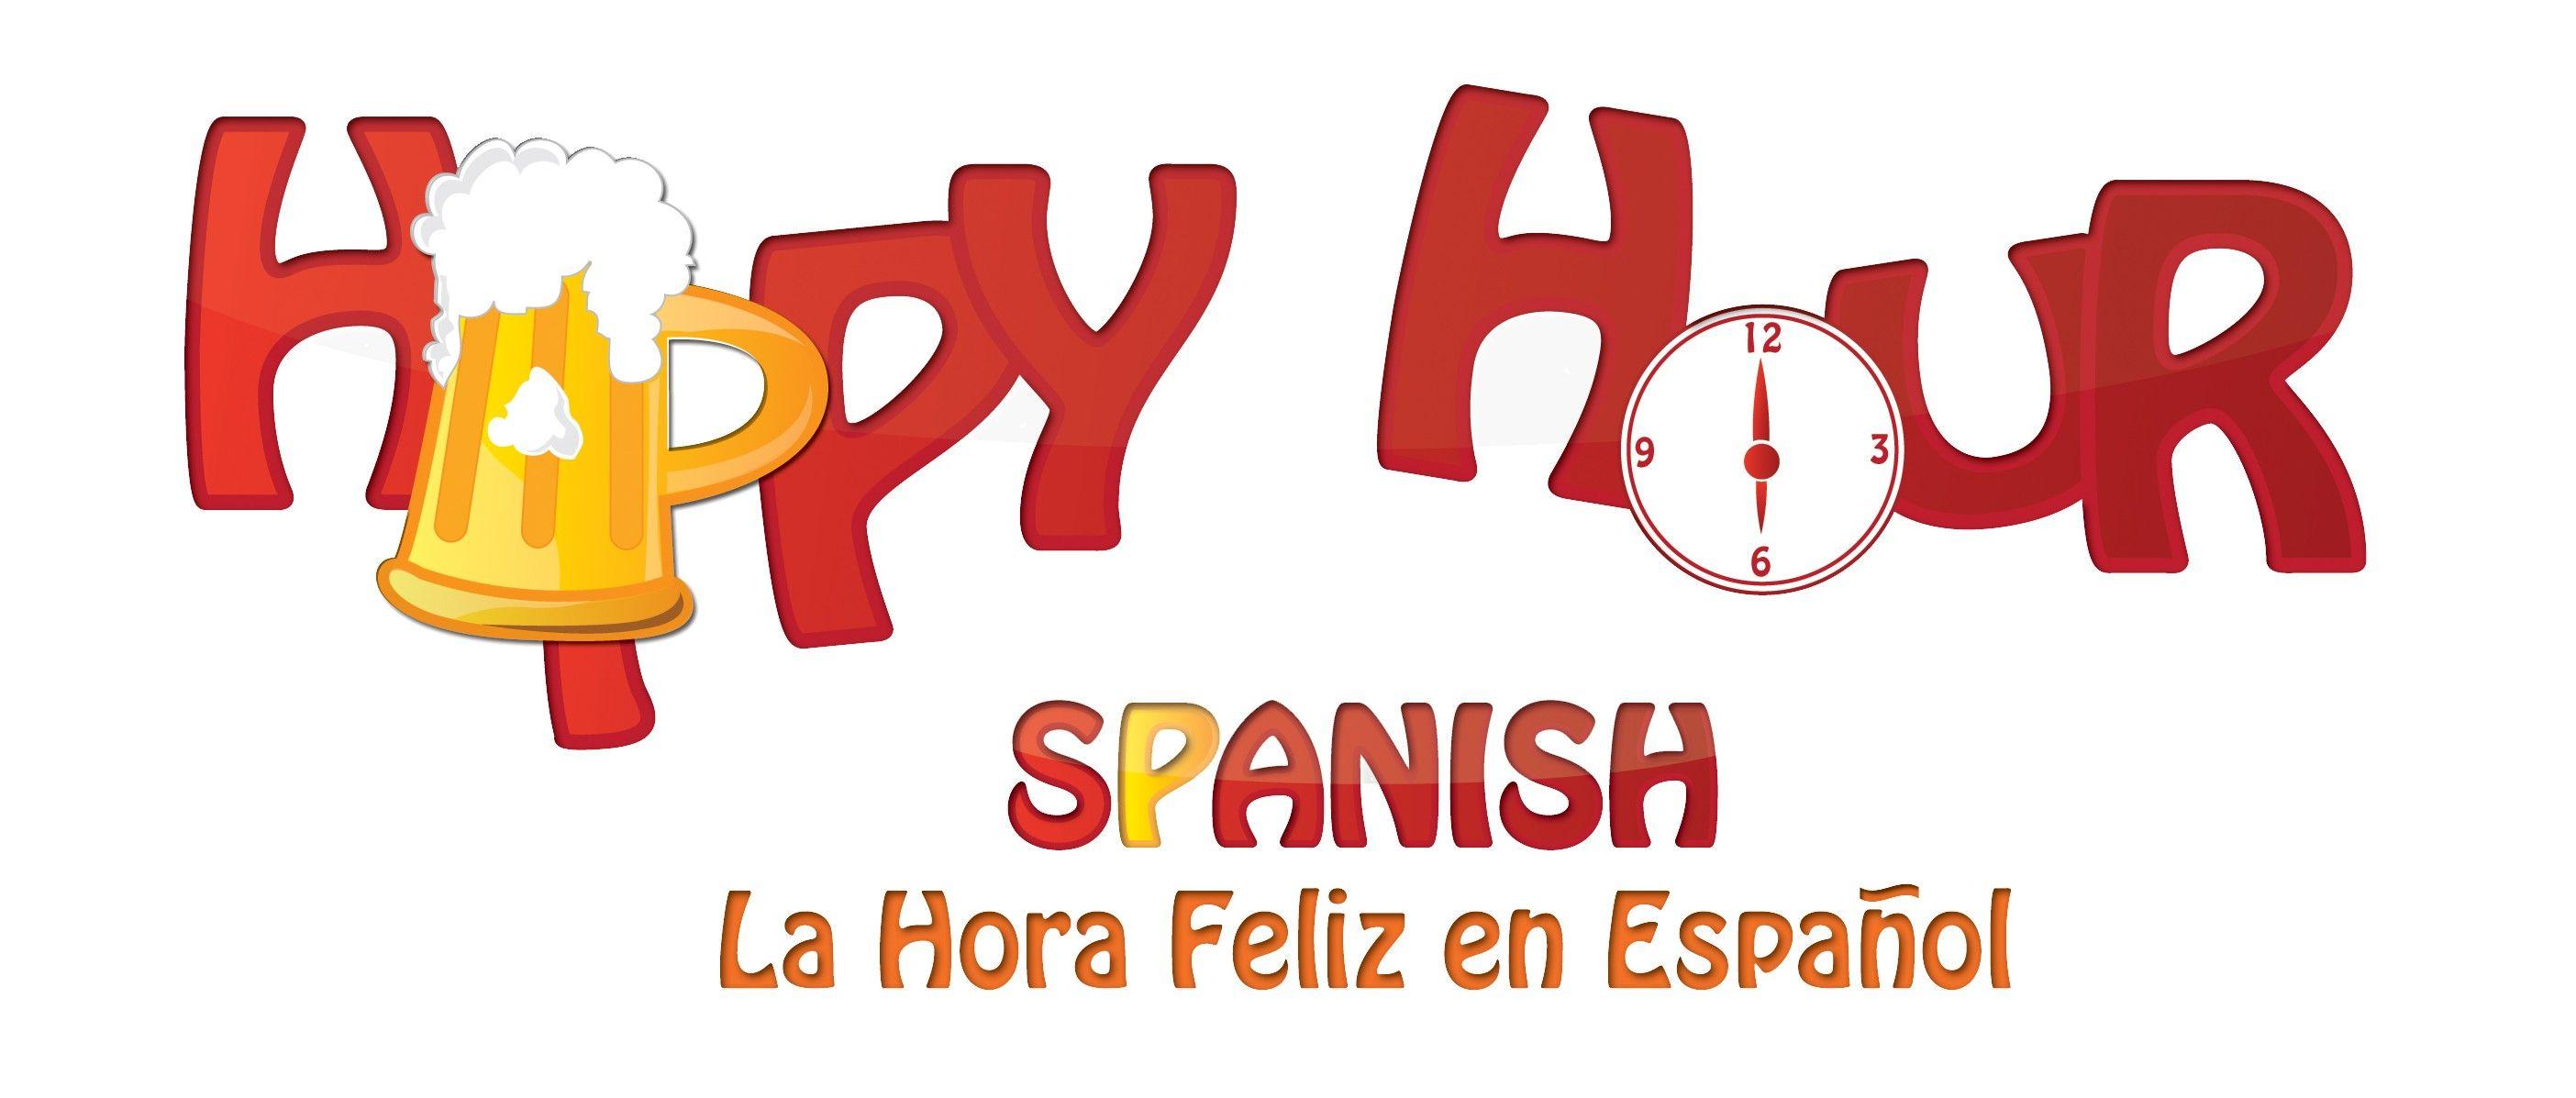 Spanish Logo - Happy Hour Spanish Logo